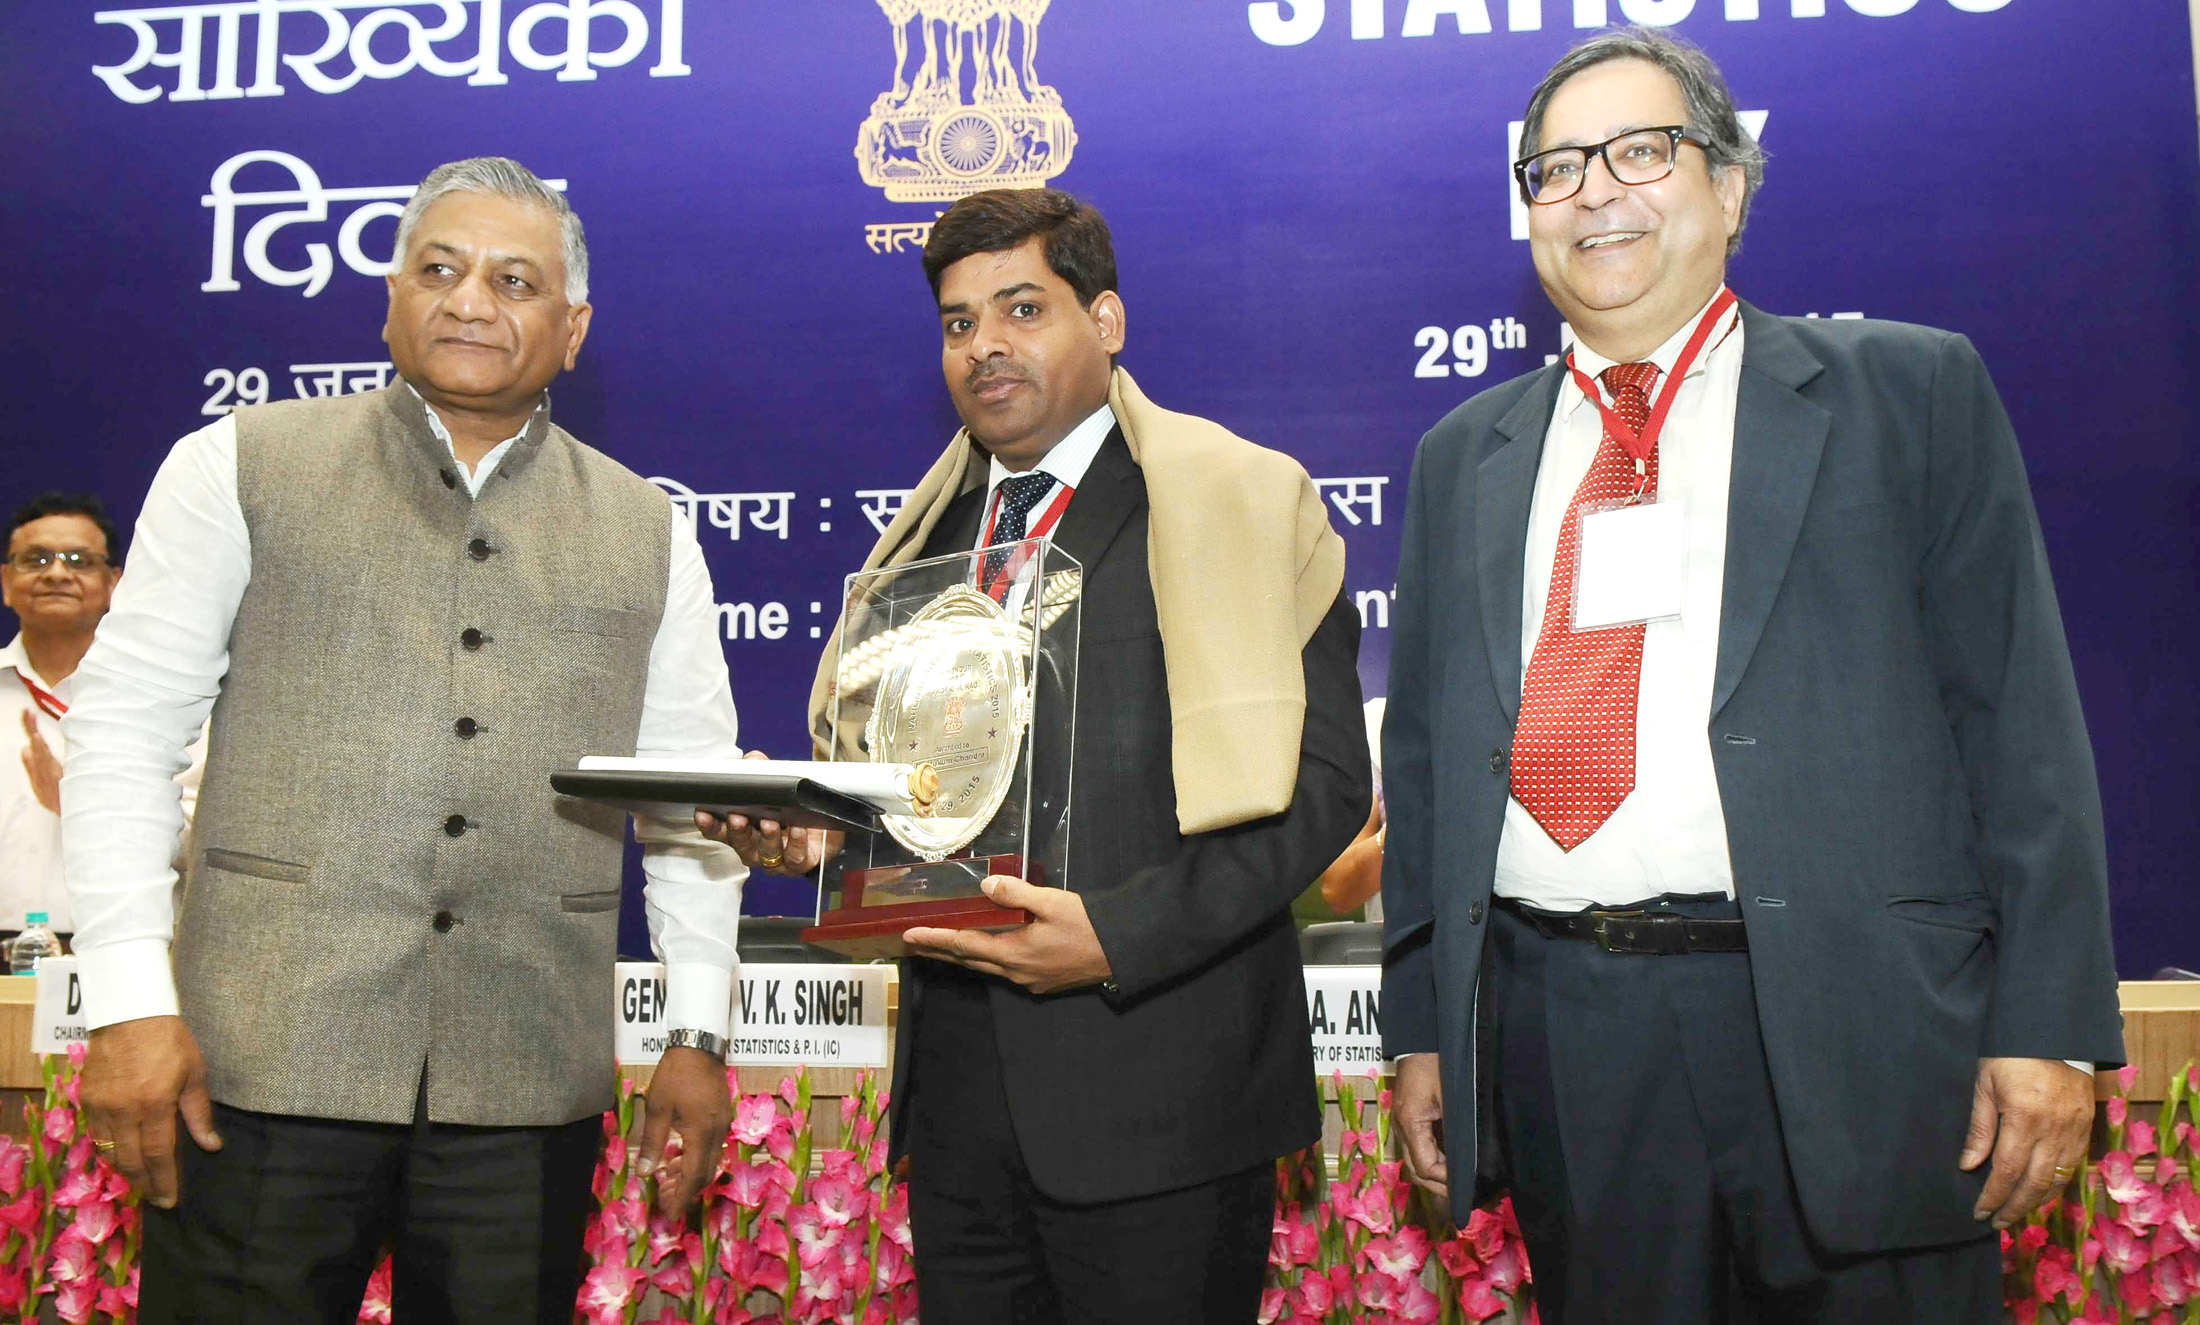 General (Retd.) V.K. Singh presented the National Statistics Awards